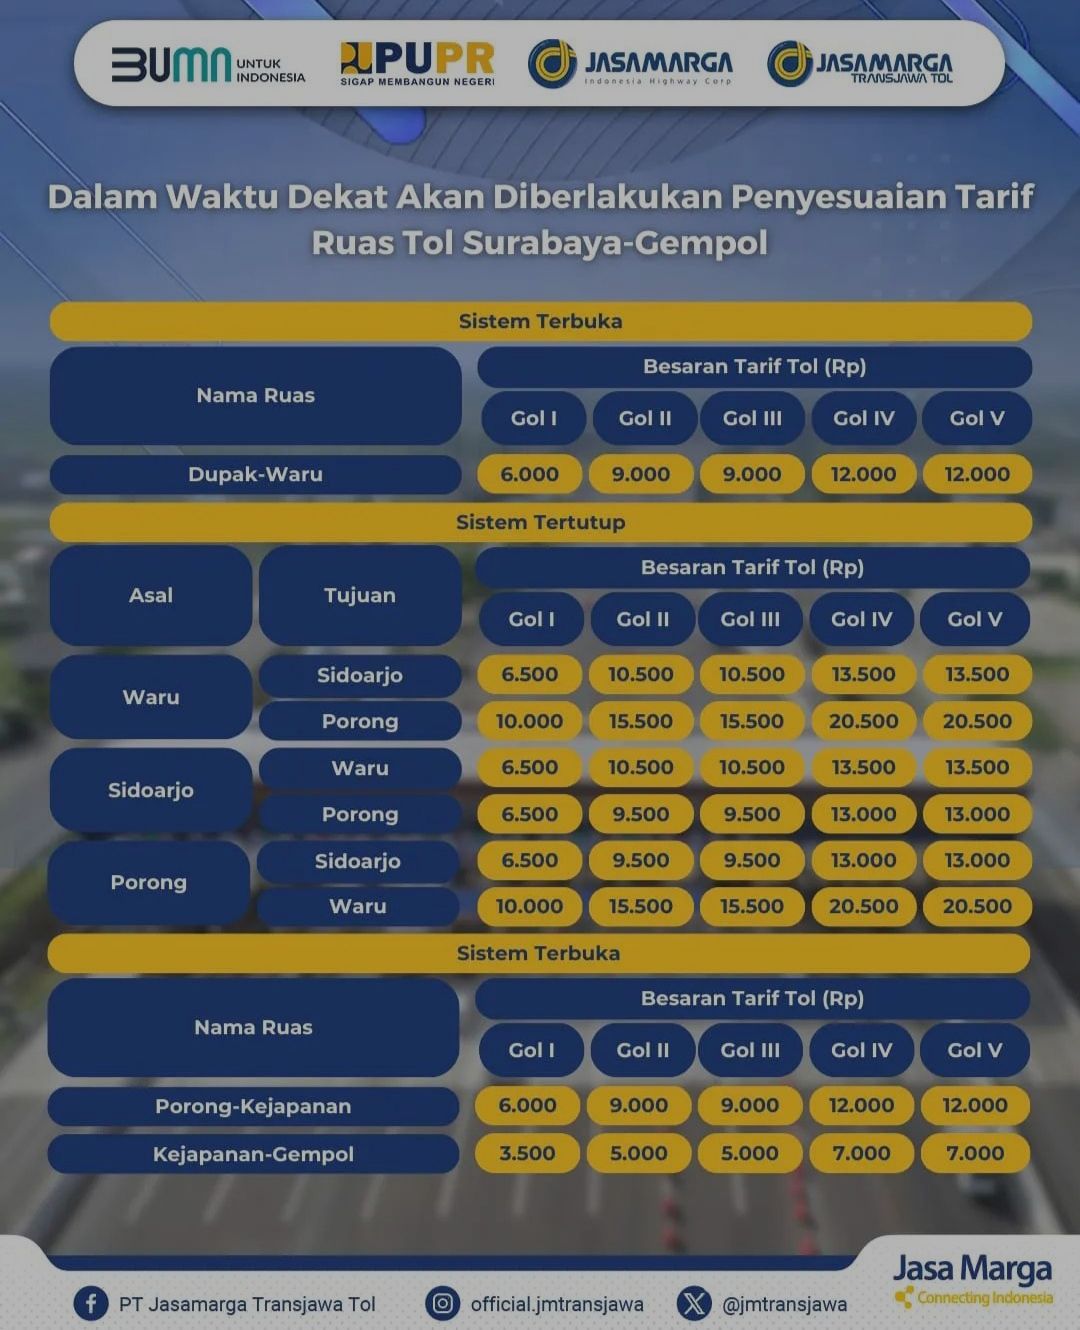 Penyesuaian tarif ruas tol Surabaya - Gempol